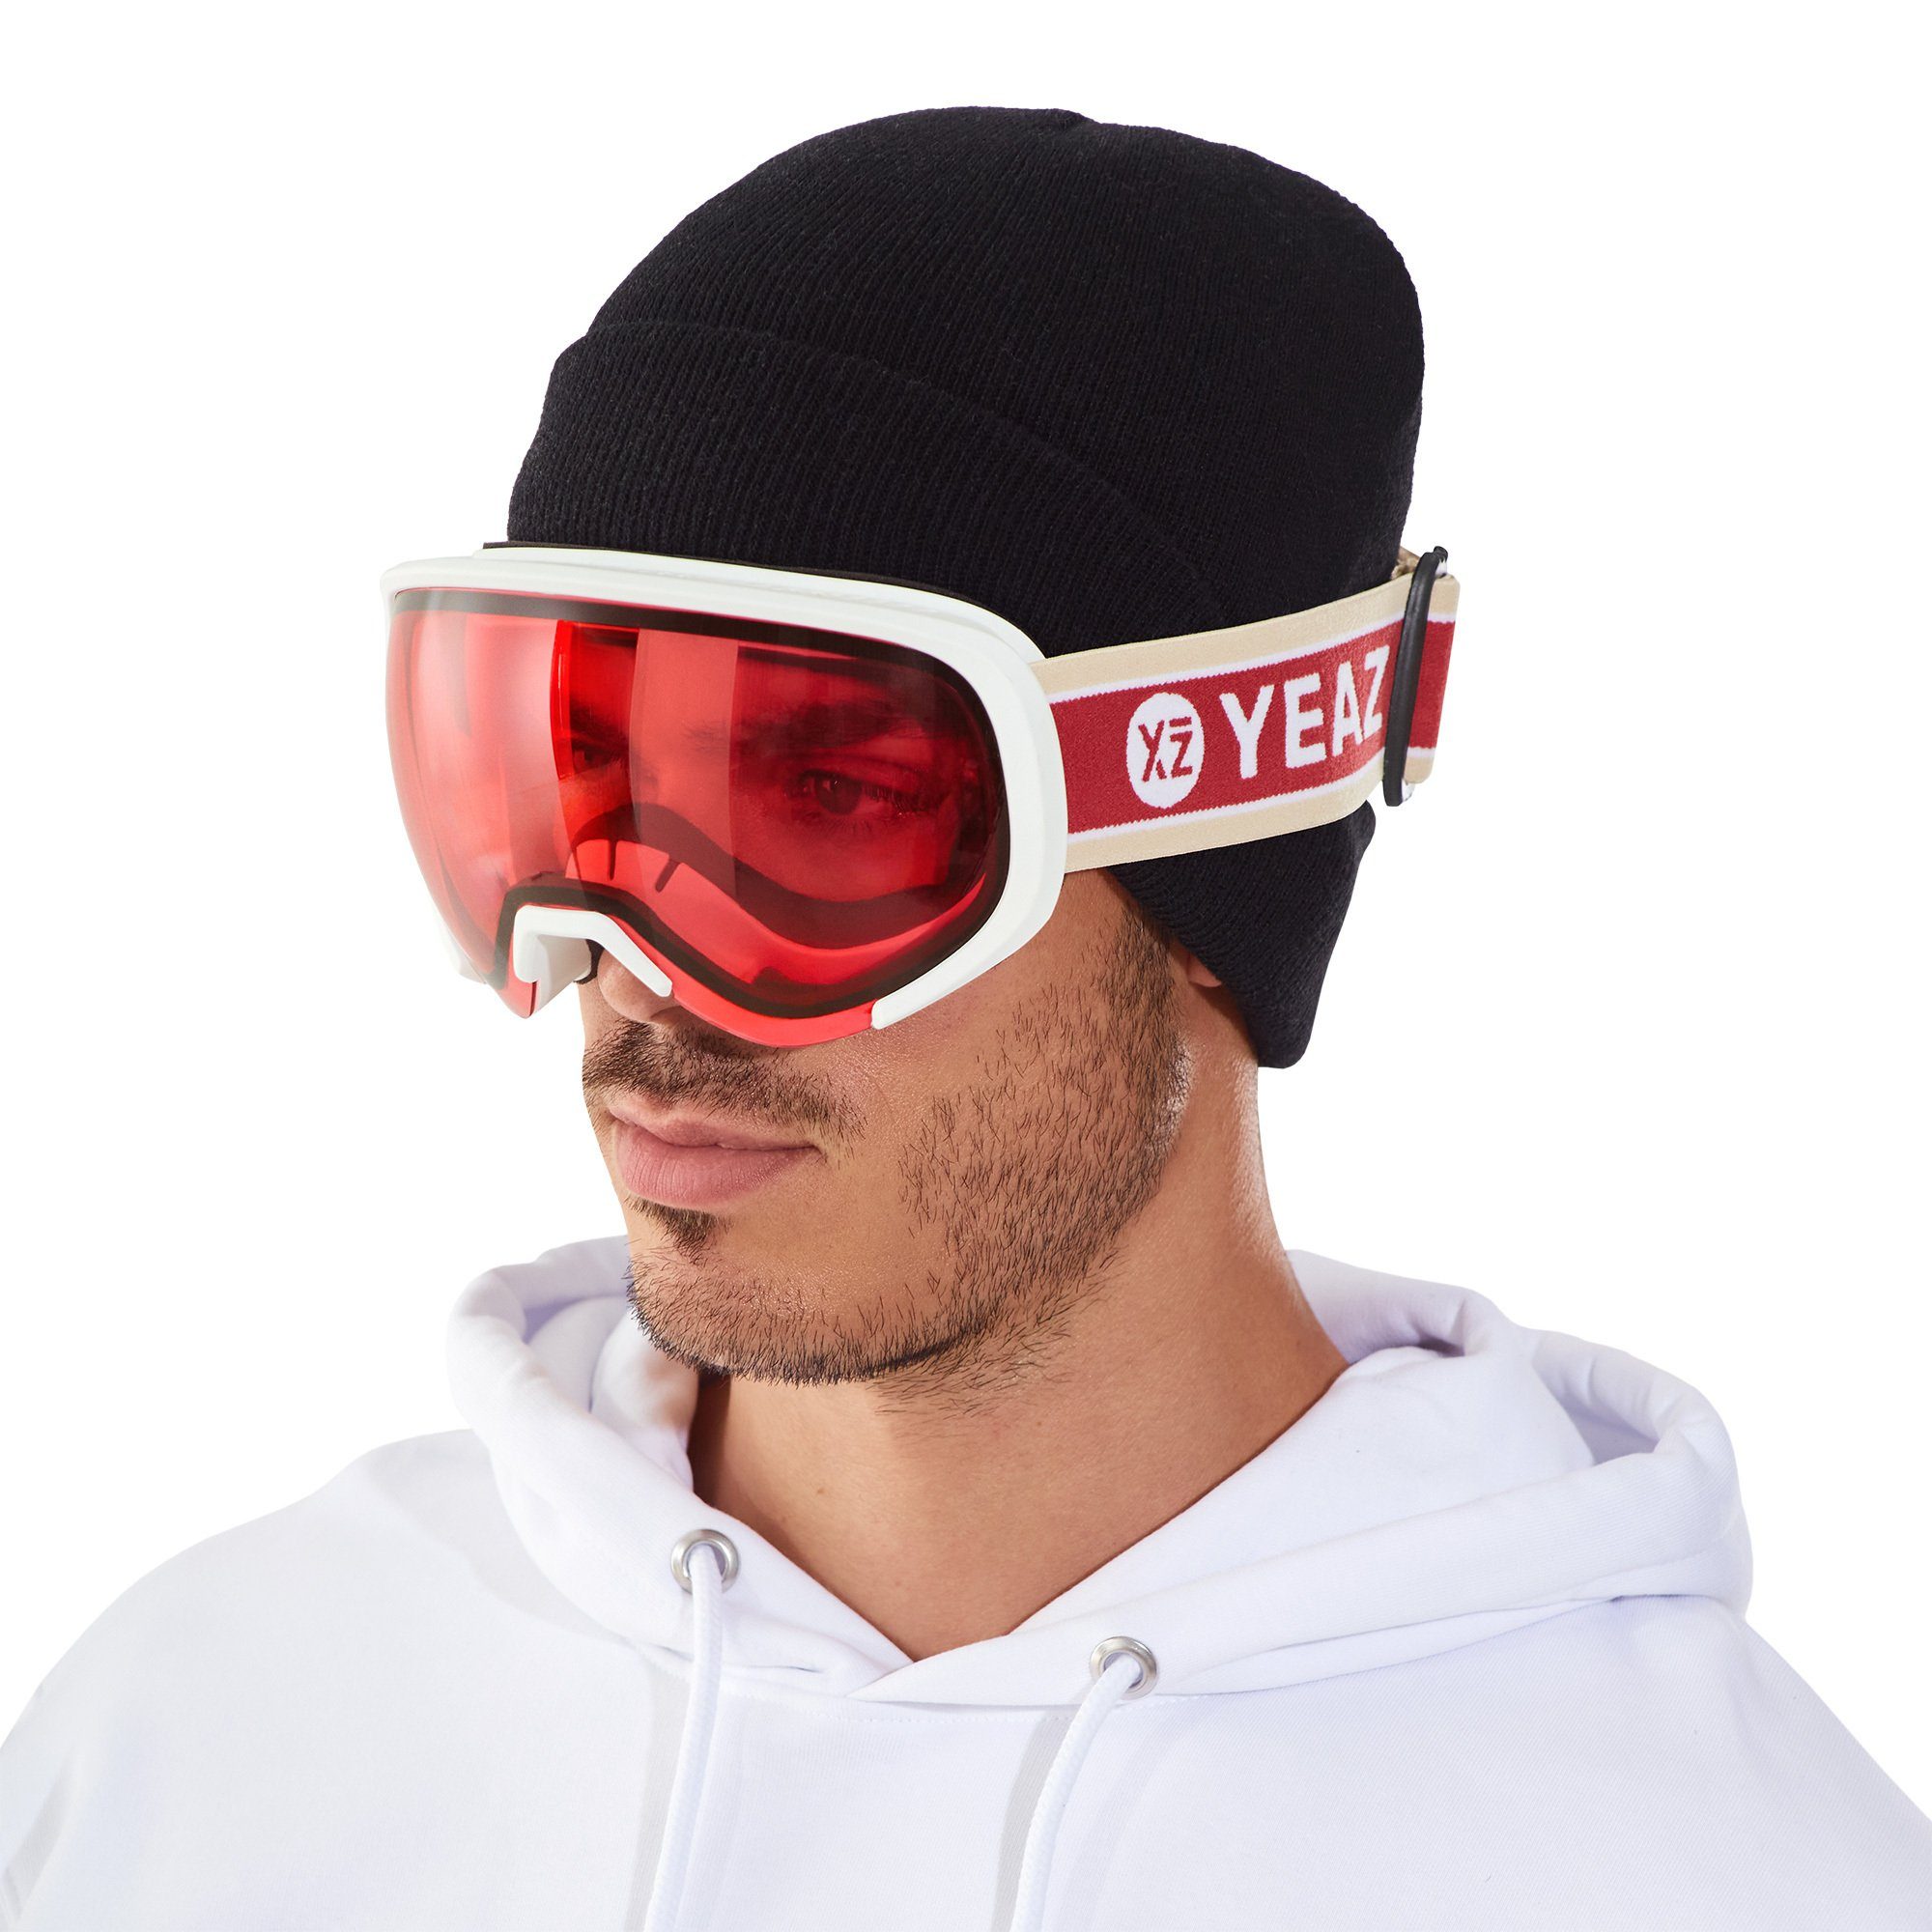 YEAZ Skibrille BLACK RUN ski- und snowboard-brille rot/matt weiß, Premium-Ski- und Snowboardbrille für Erwachsene und Jugendliche | Brillen